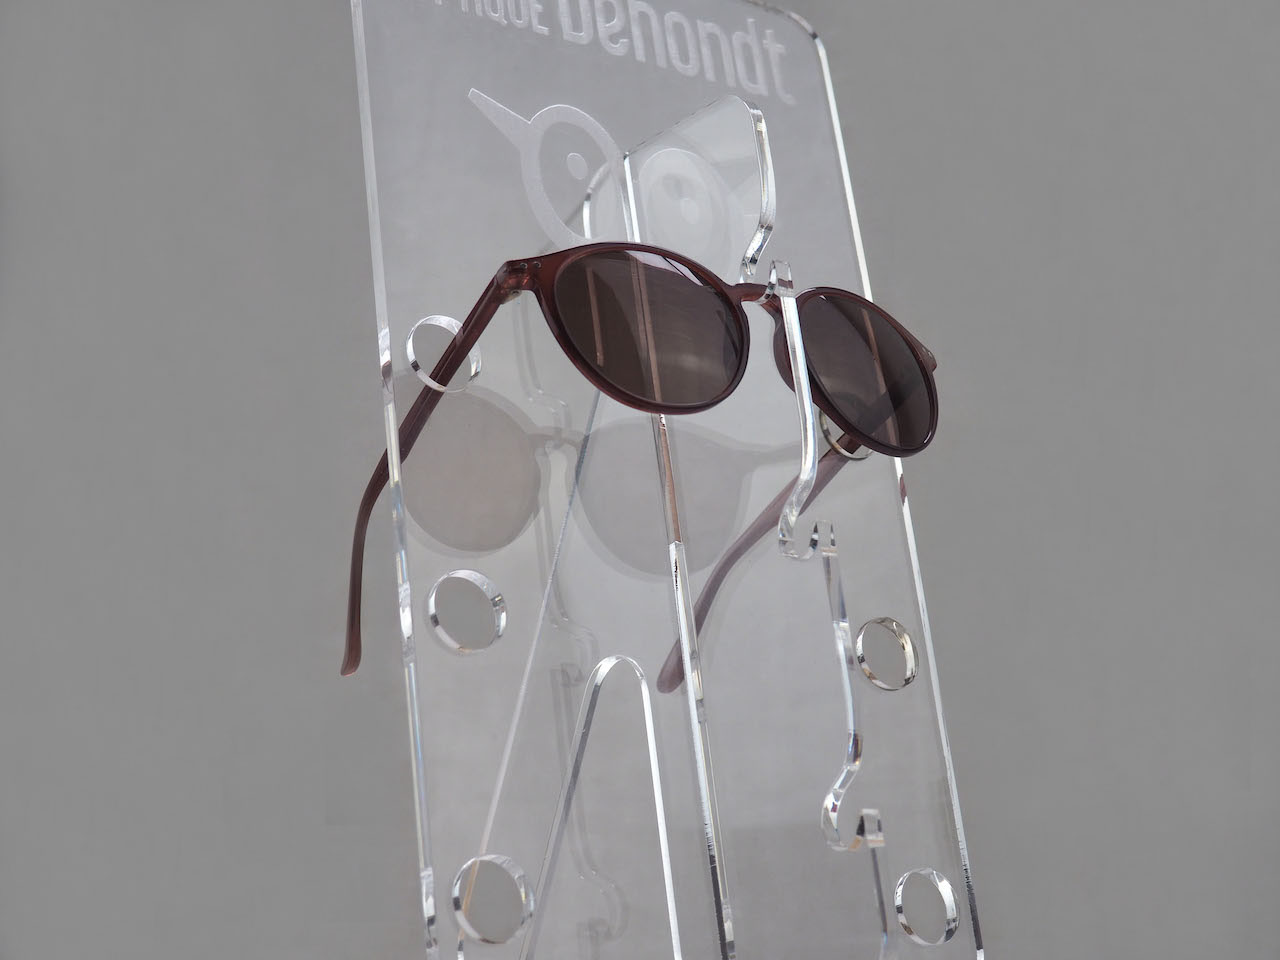 présentoir à lunettes découpé au laser, objet publicitaire sur lieux de vente en PMMA décolore avec une paire de lunette en exemple